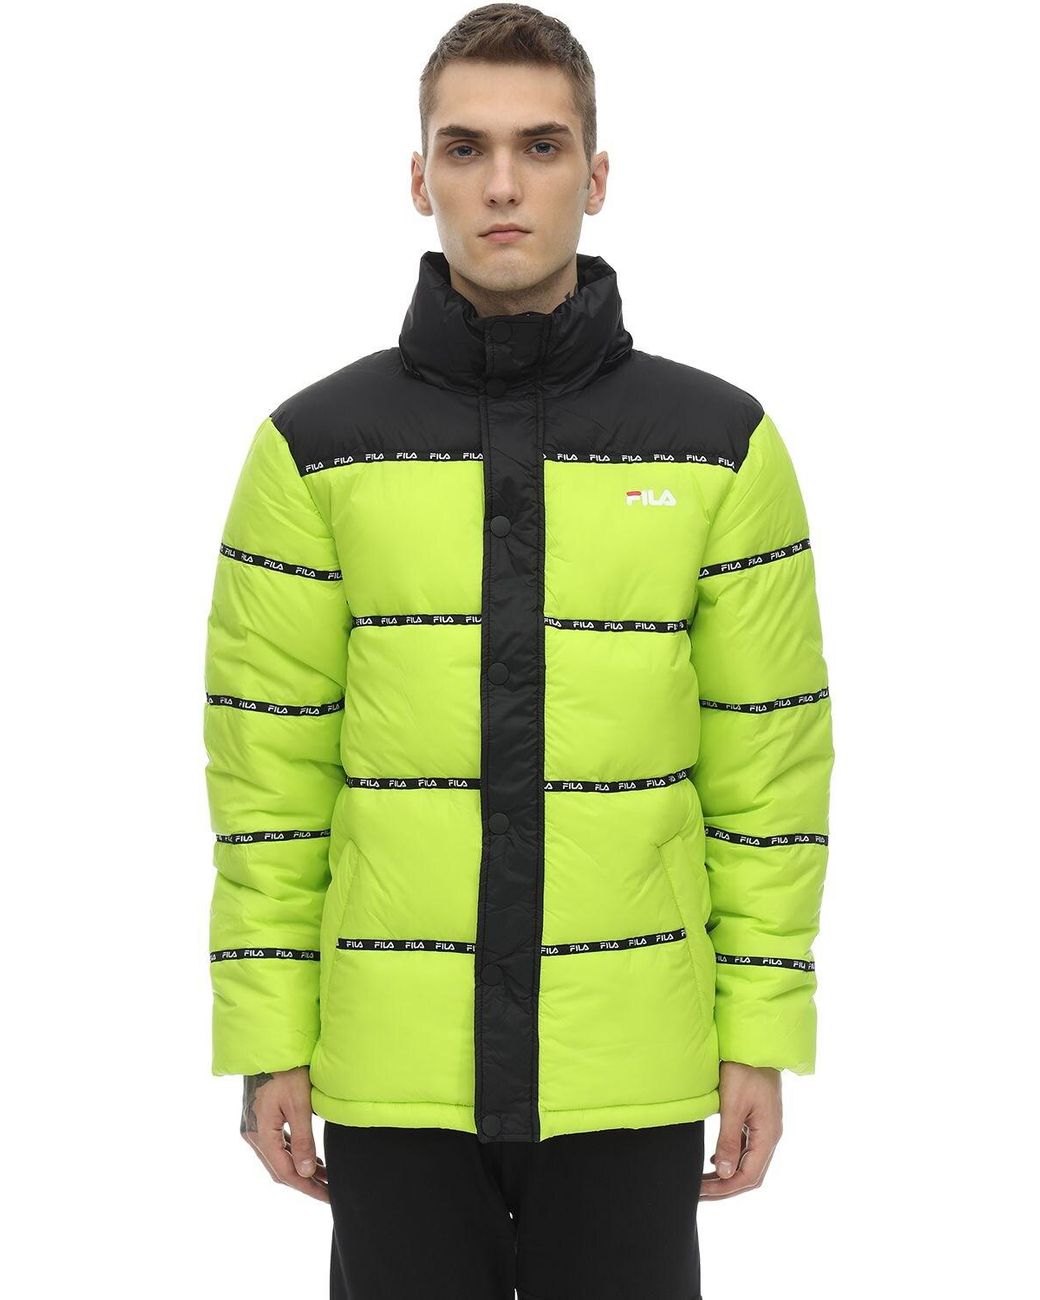 fila neon green jacket